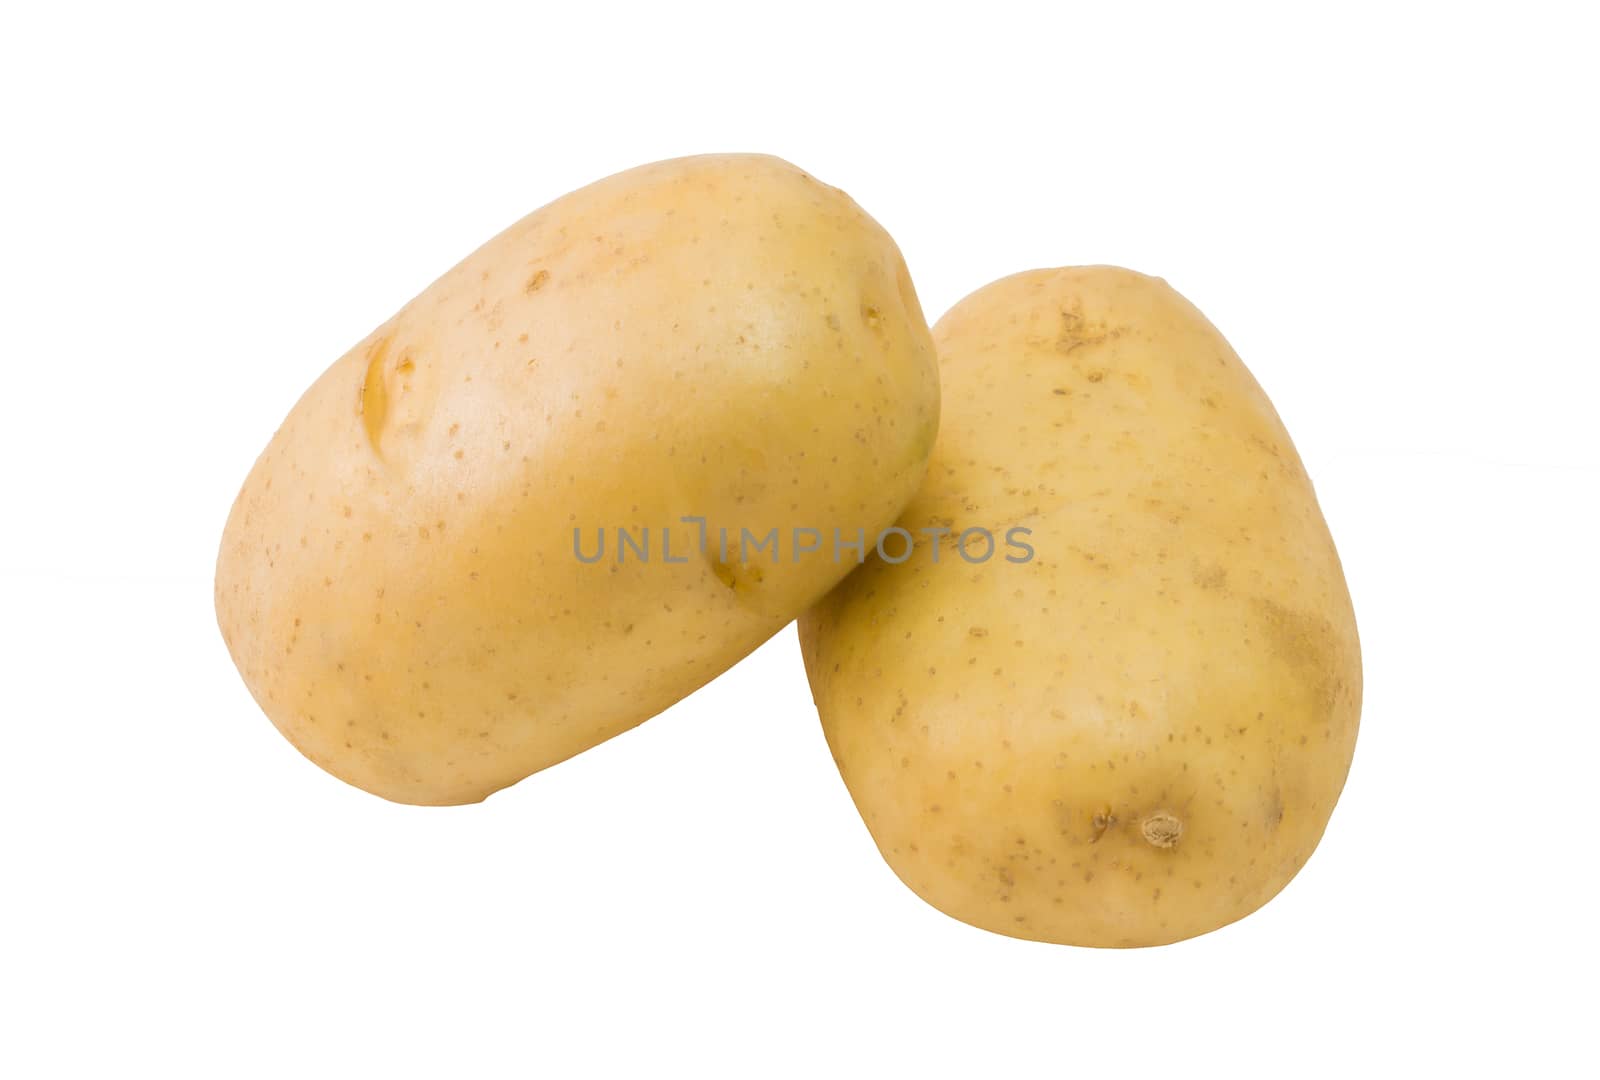 Fresh potatoes isolated on white background close up